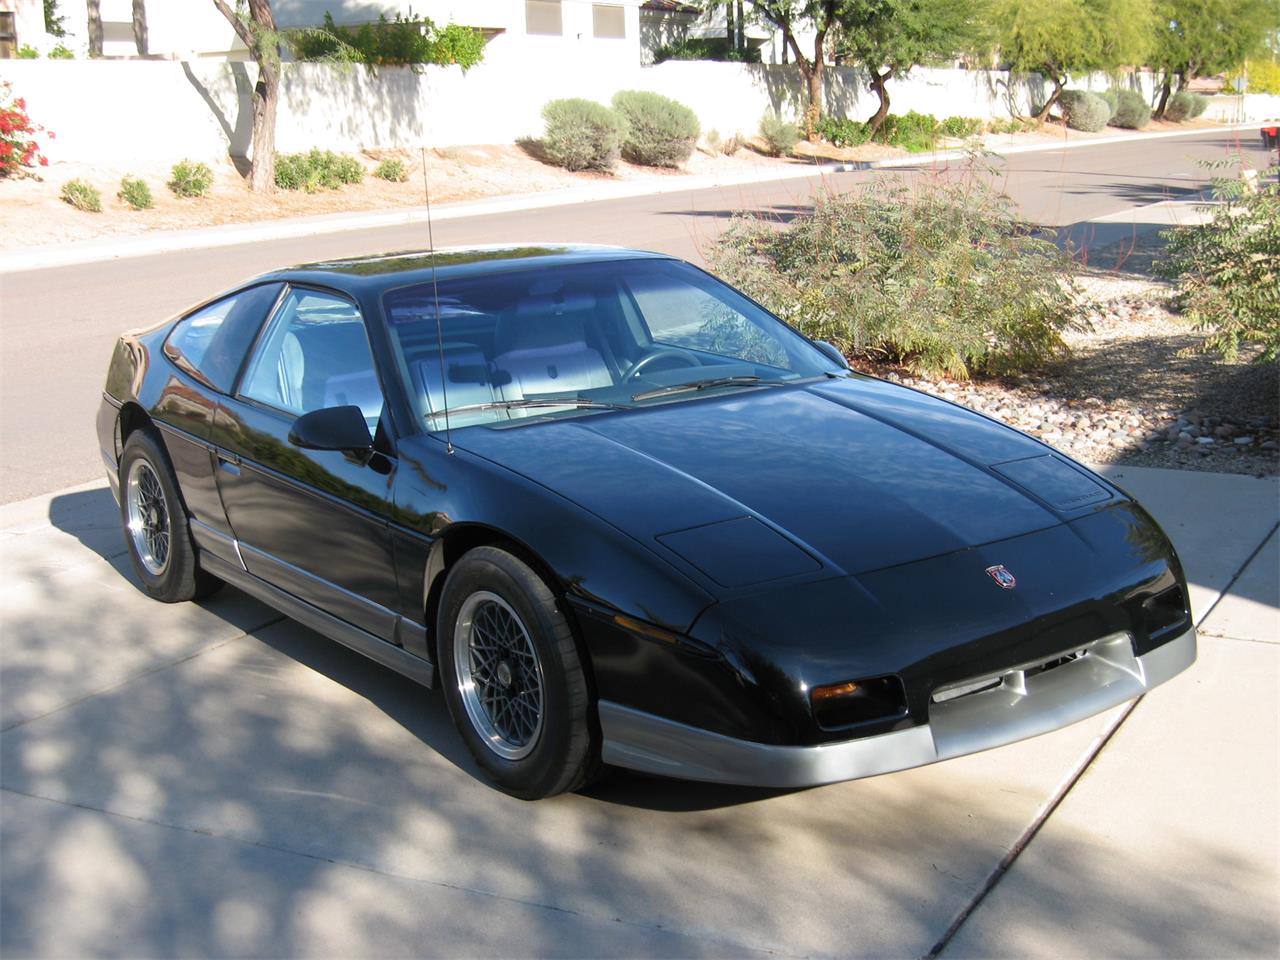 1987 Pontiac Fiero For Sale In Scottsdale Az